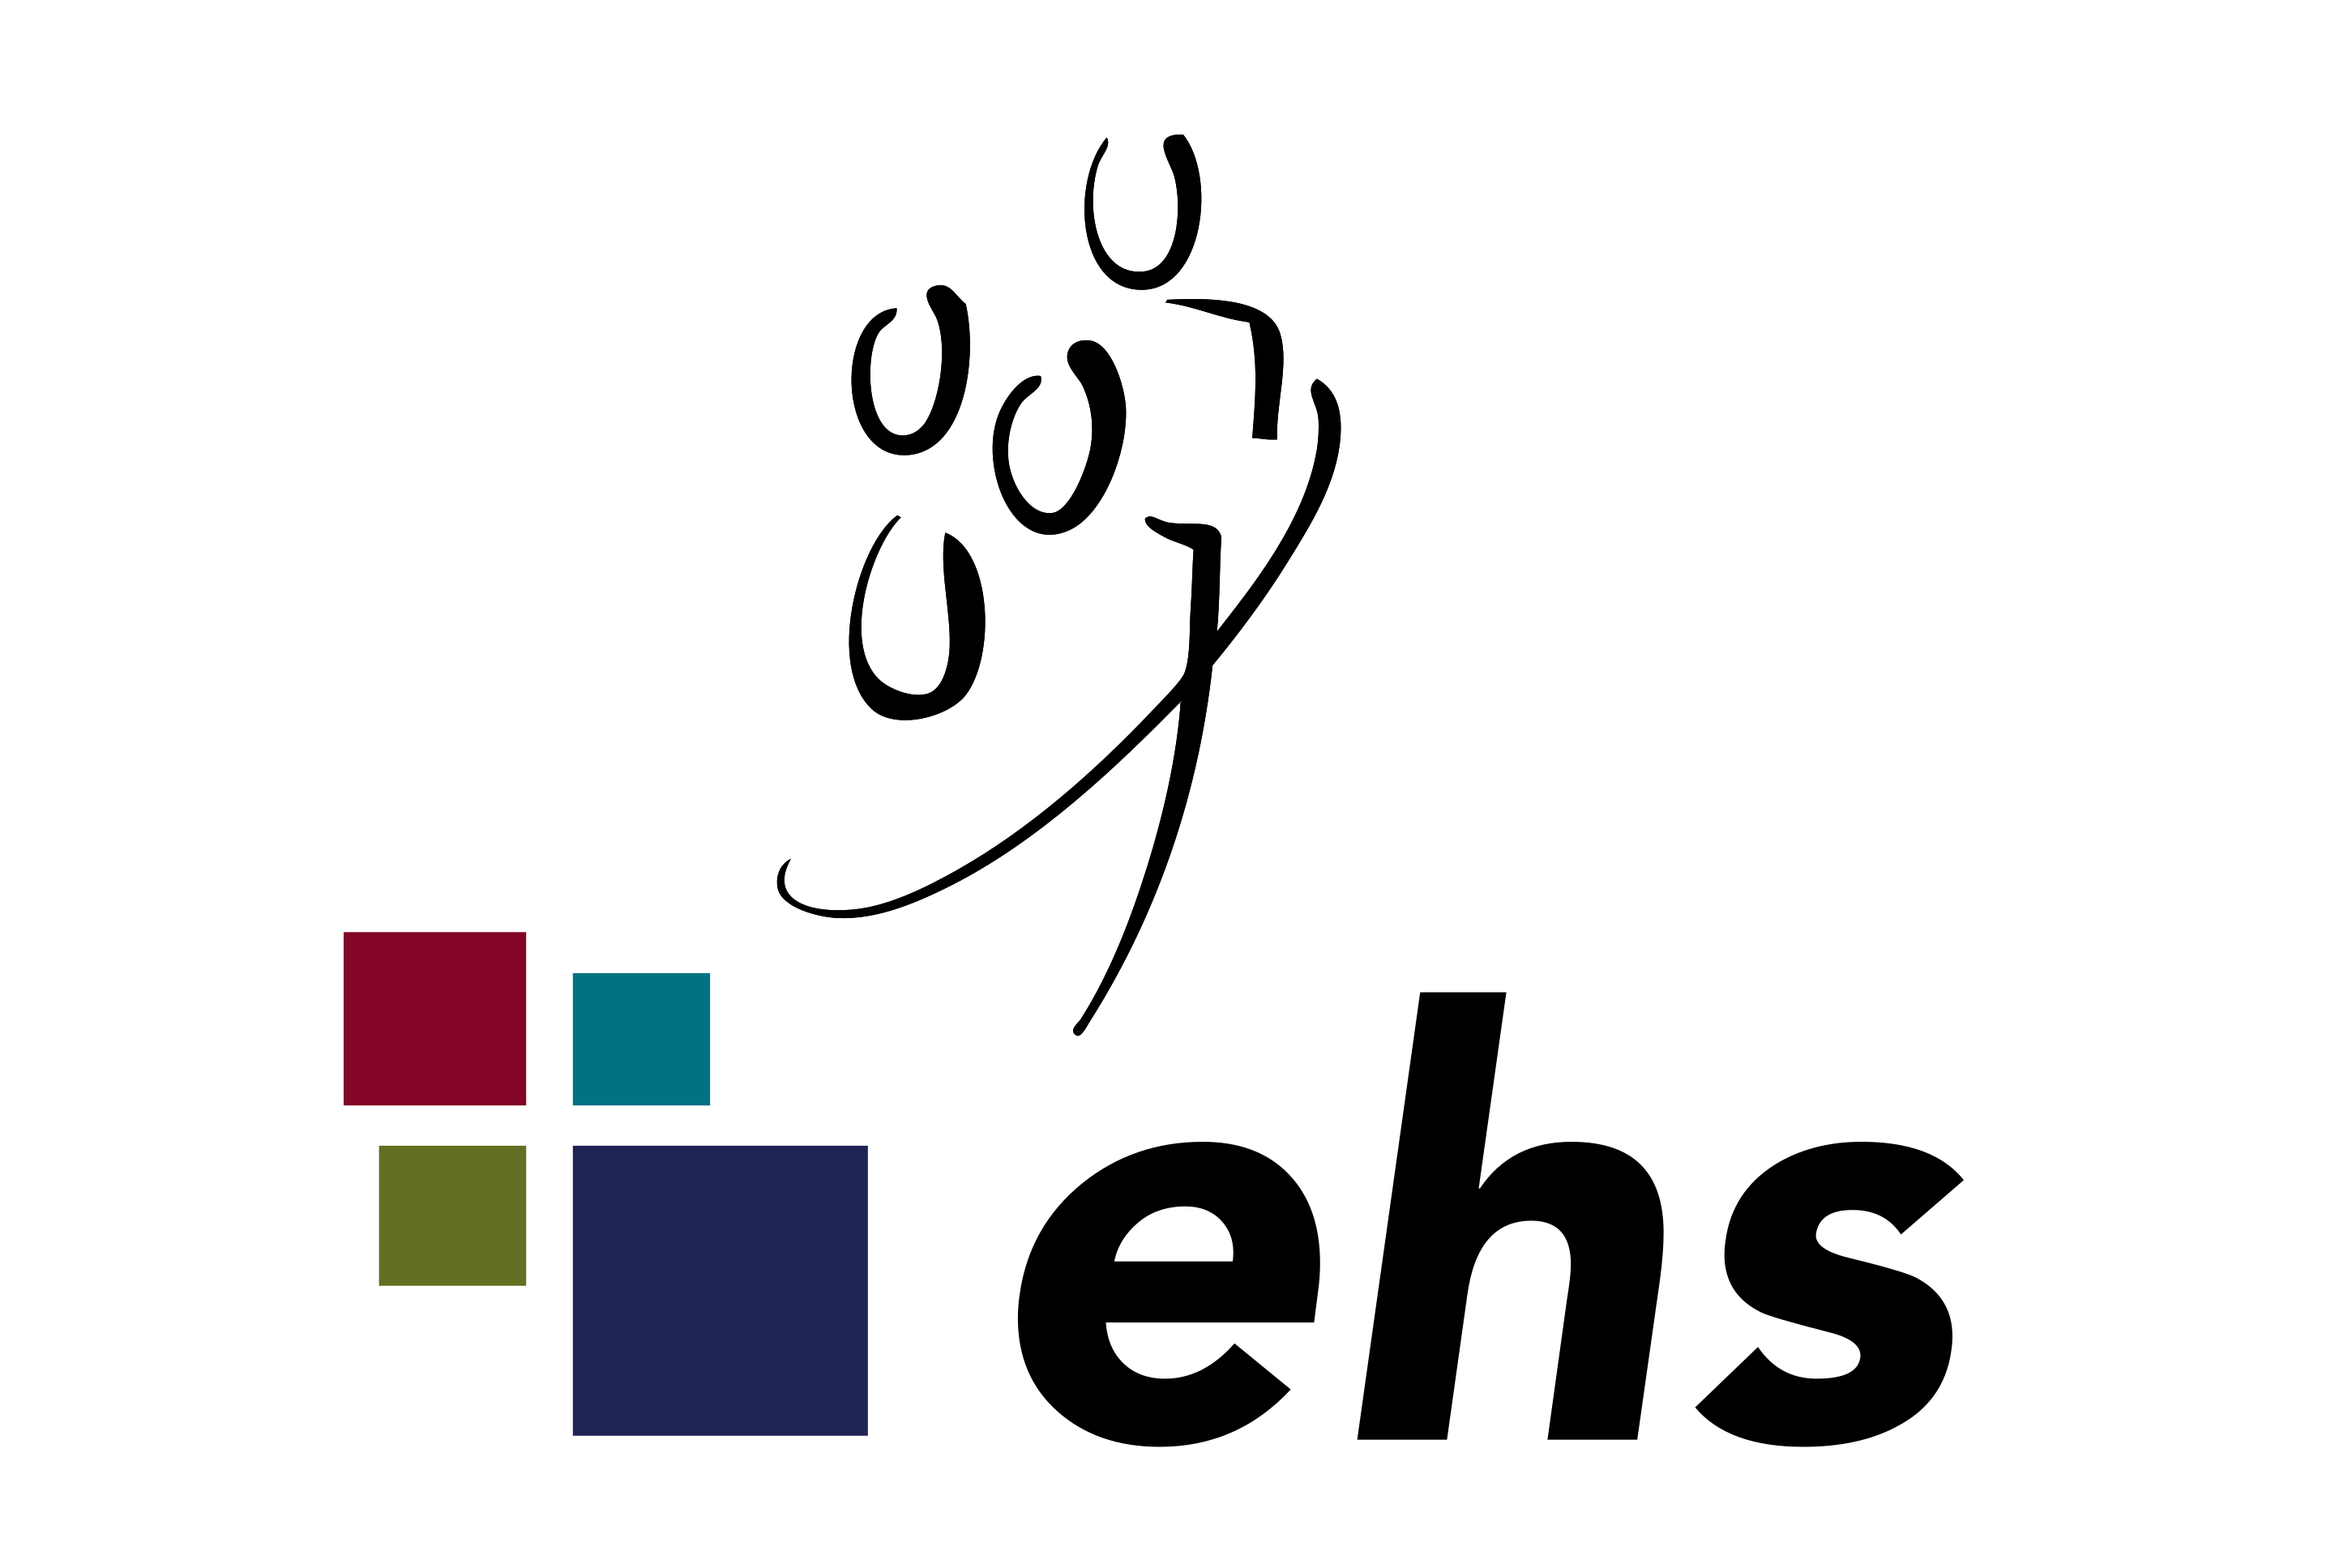 Das Logo des EHS Dresden ist hier abgebildet.